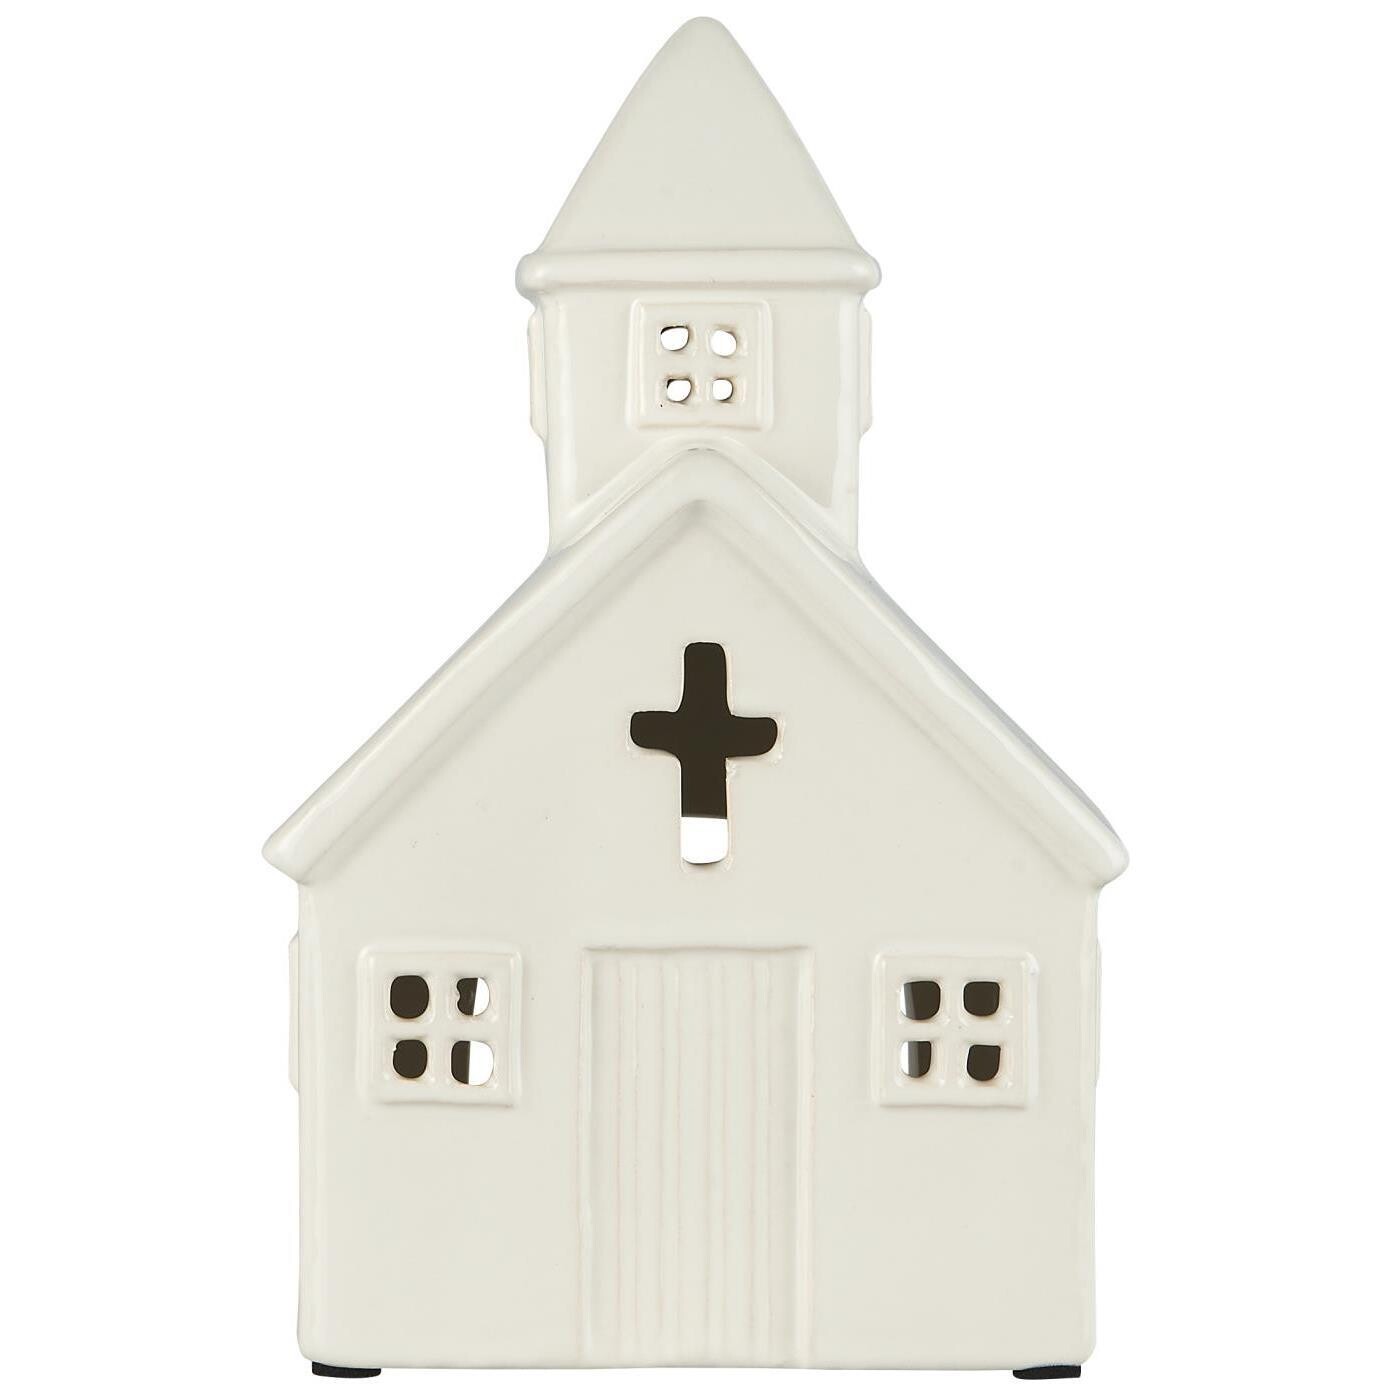 Baznīcas formas svečturis tējas svecēm, baltā krāsā.

Valge keraaminiline kirikut kujutav teeküünlaalus.